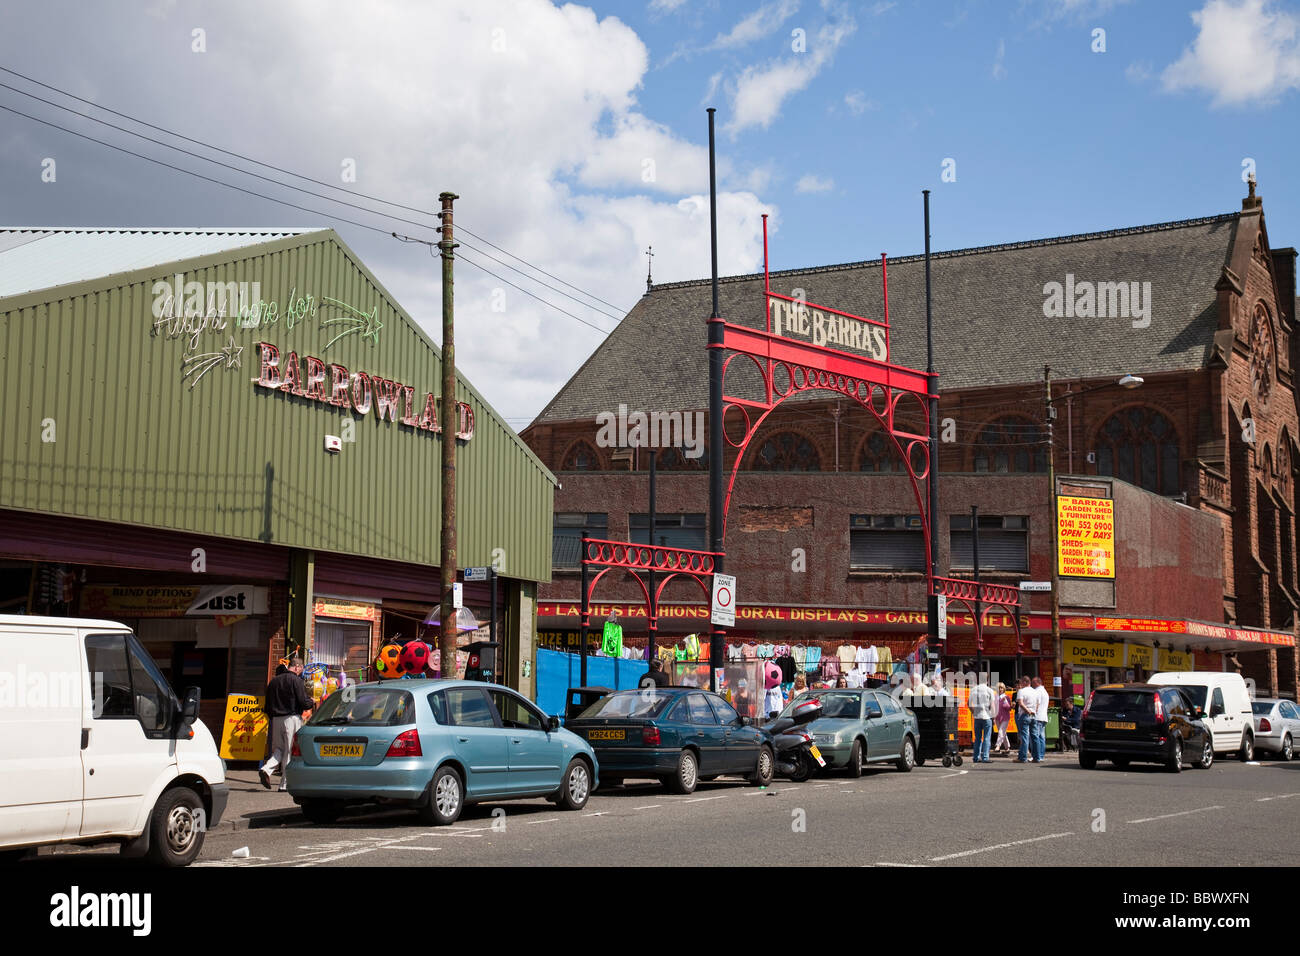 Entrée de la Barras, l'aka Barrowland célèbre / bon marché célèbre marché de rue dans la région de Gallowgate Glasgow, Écosse de l'Est Banque D'Images